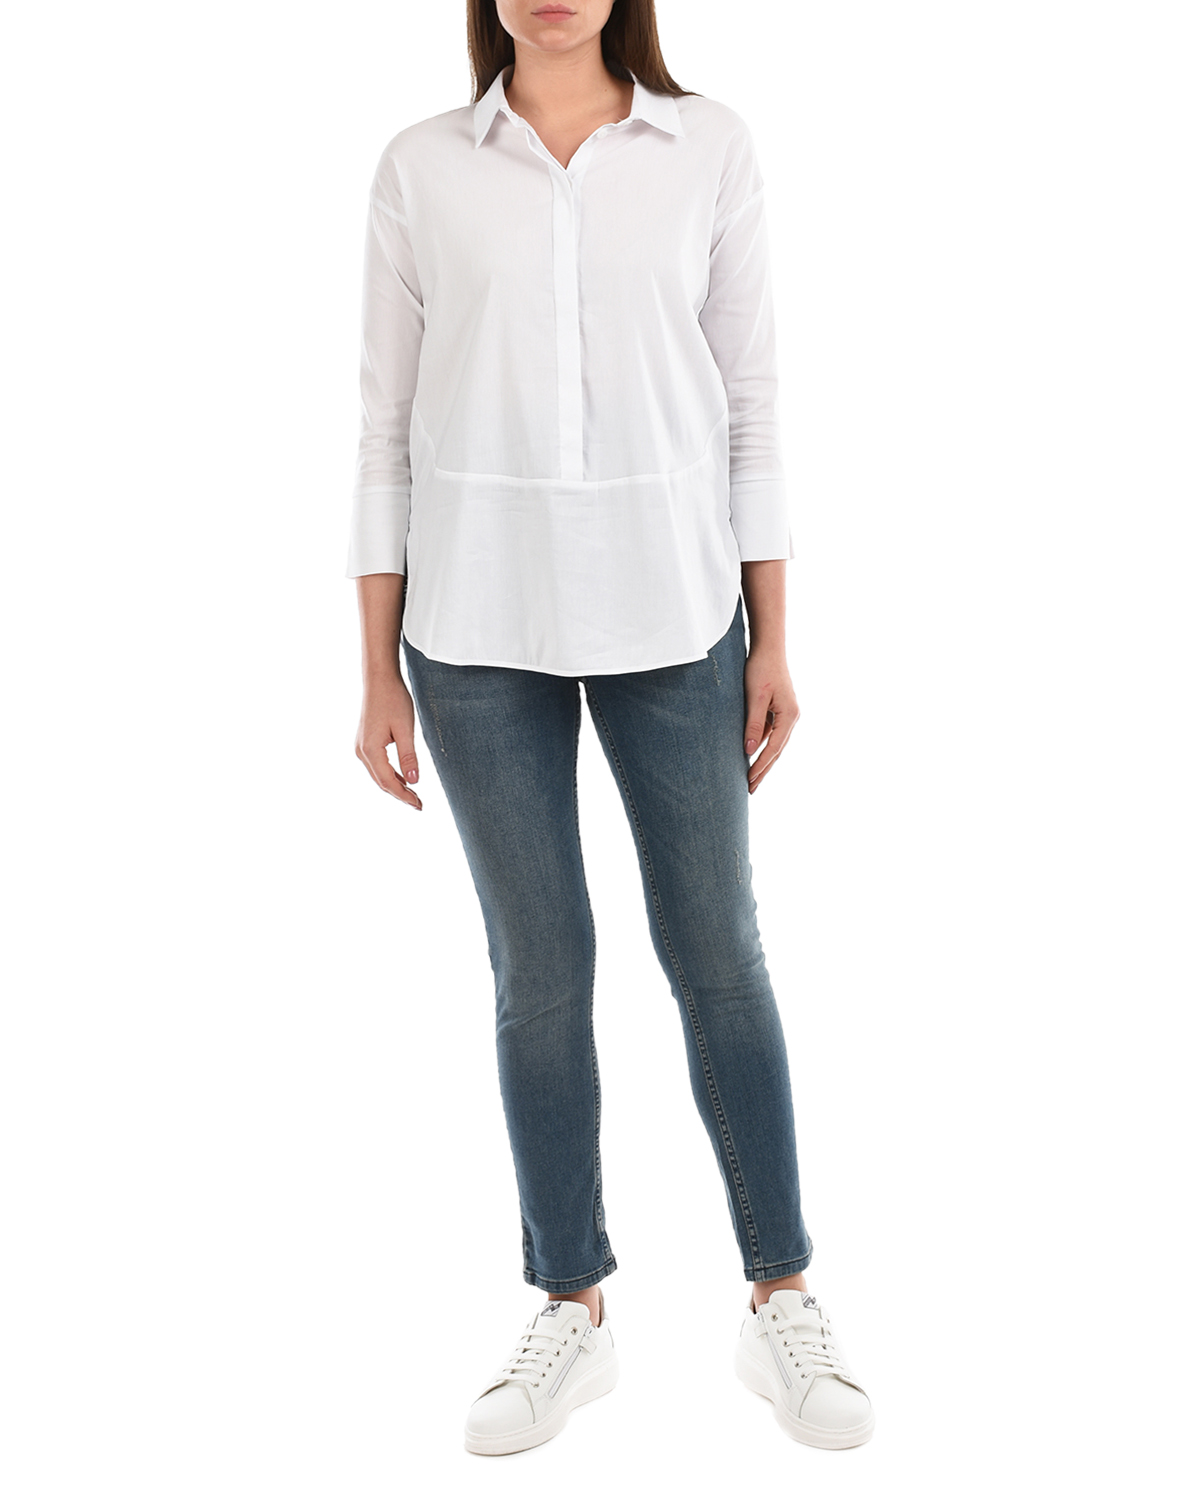 Белая блуза с рукавами 3/4 Attesa, размер 38, цвет белый Белая блуза с рукавами 3/4 Attesa - фото 4